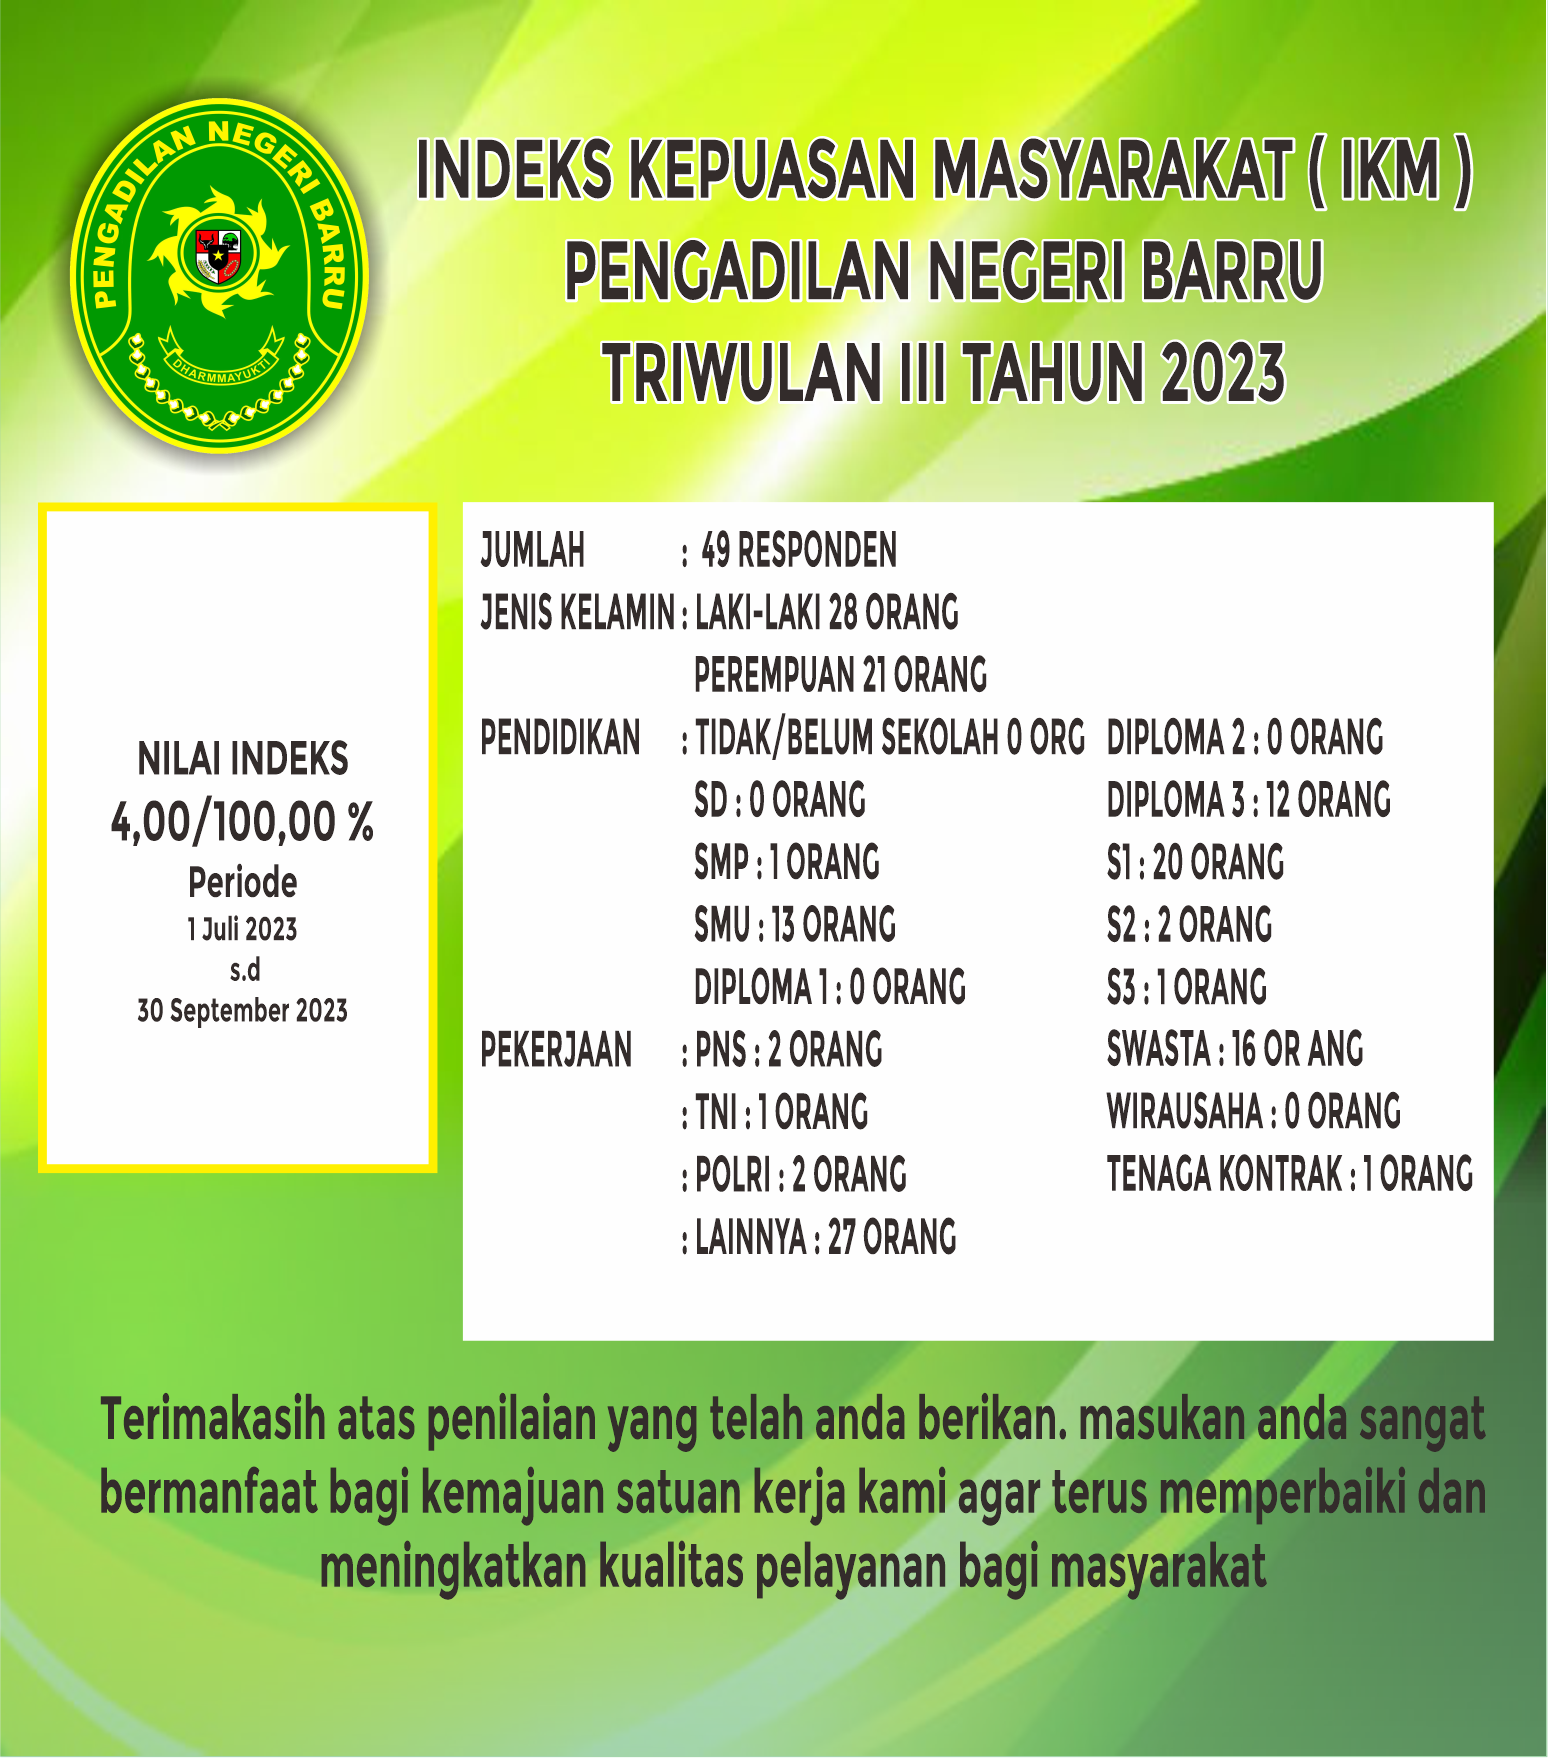 IKM TW III 2023